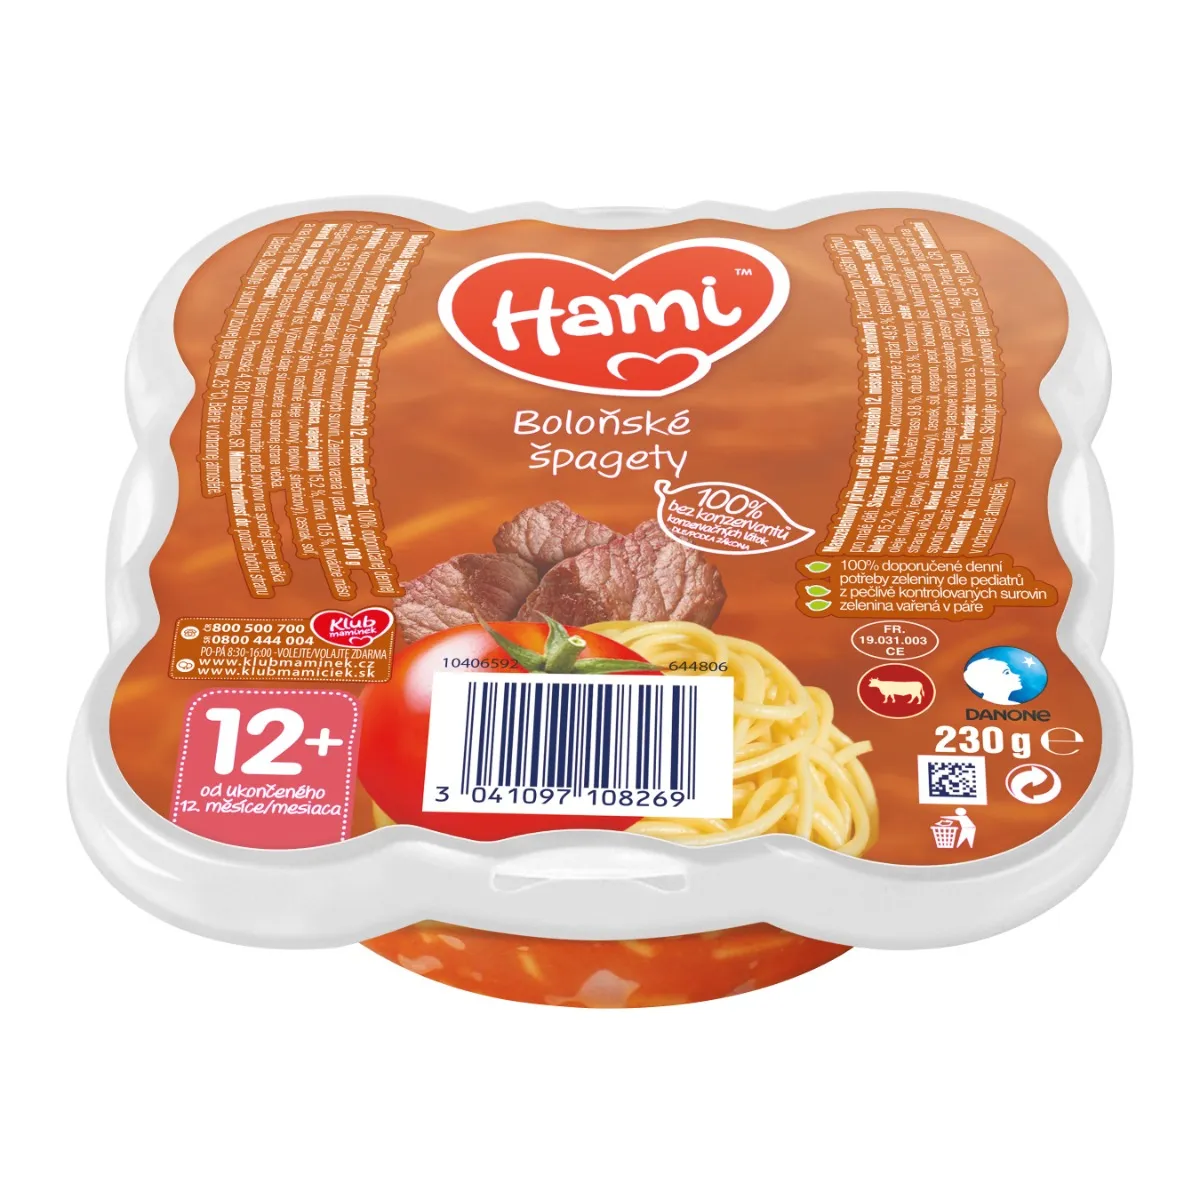 Hami Boloňské špagety 230 g